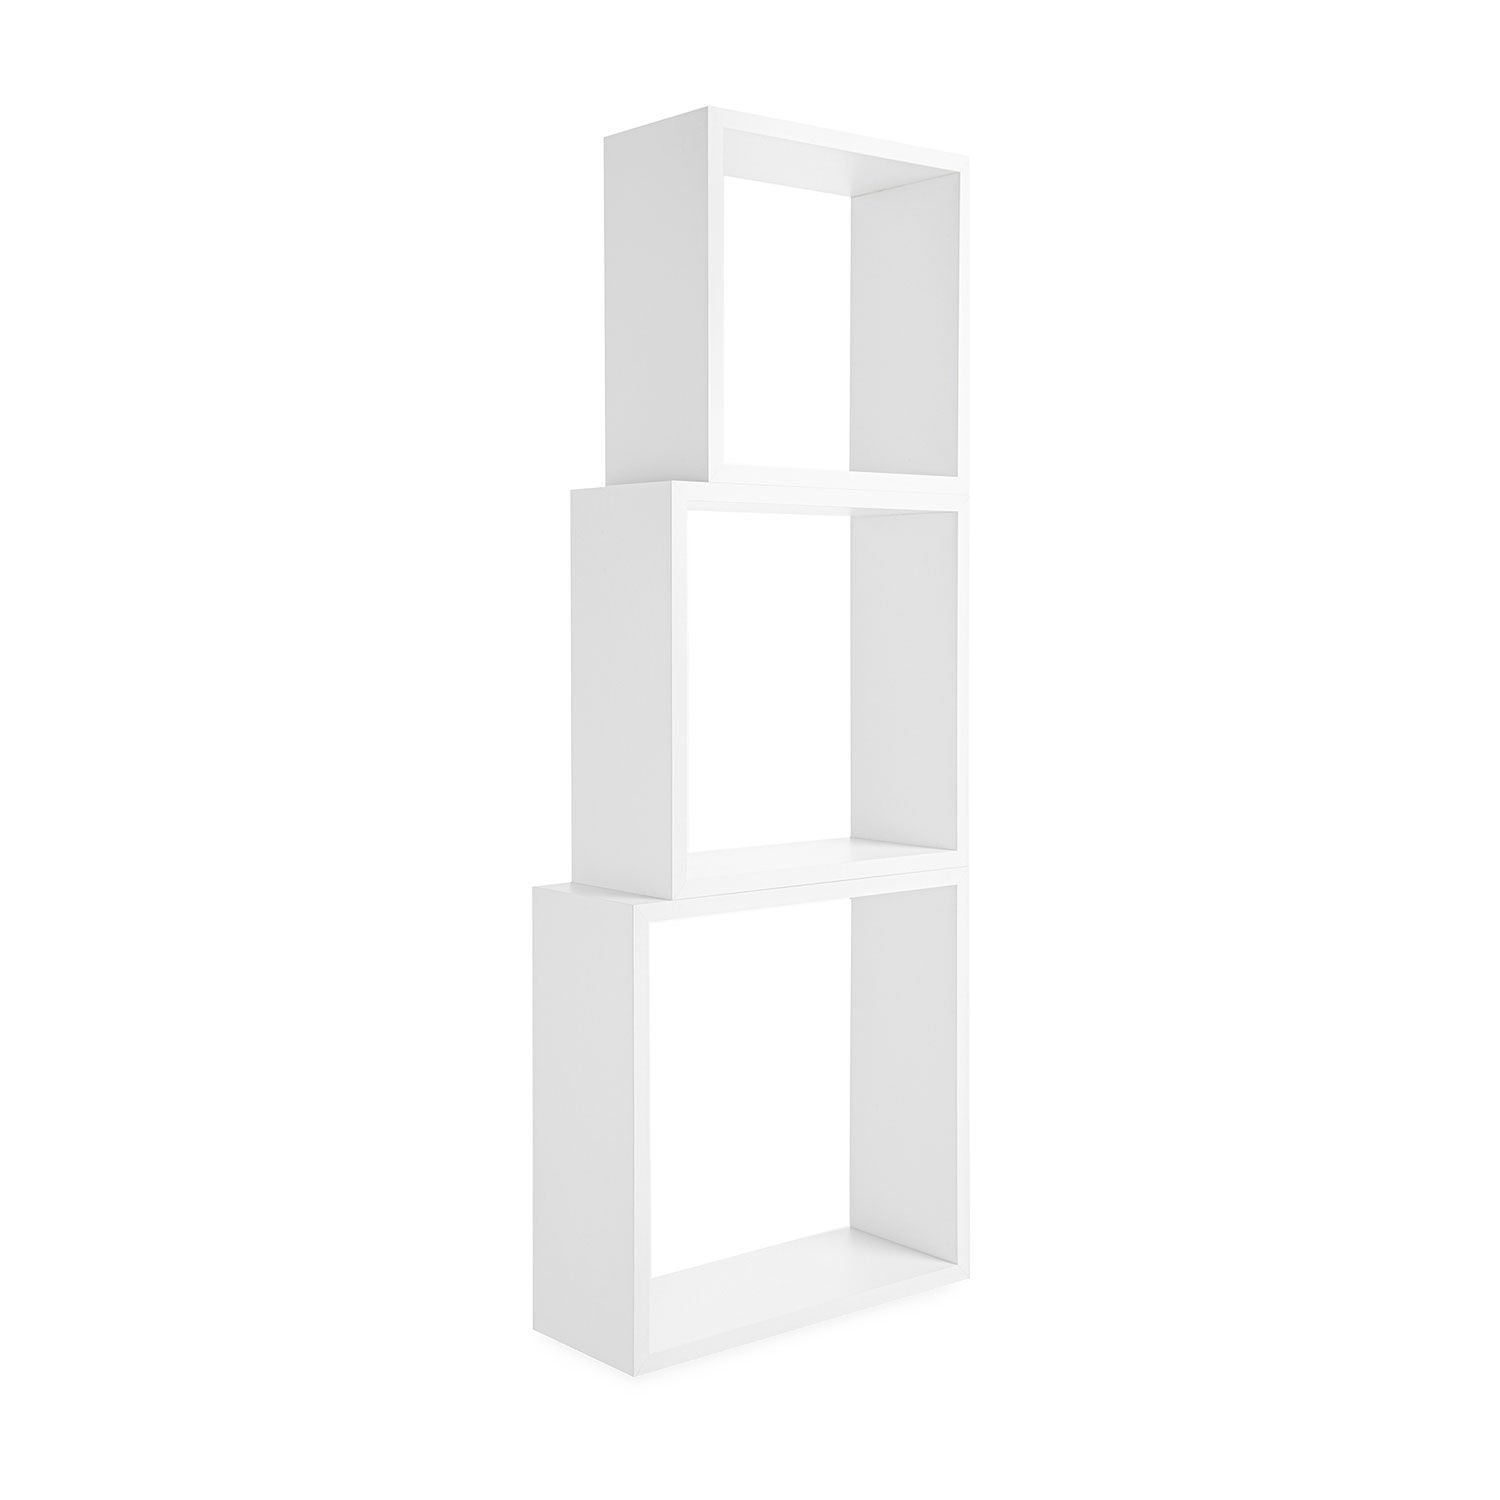 Cube Floating Wall Shelf Set, Cube Unit Bookcase Decor